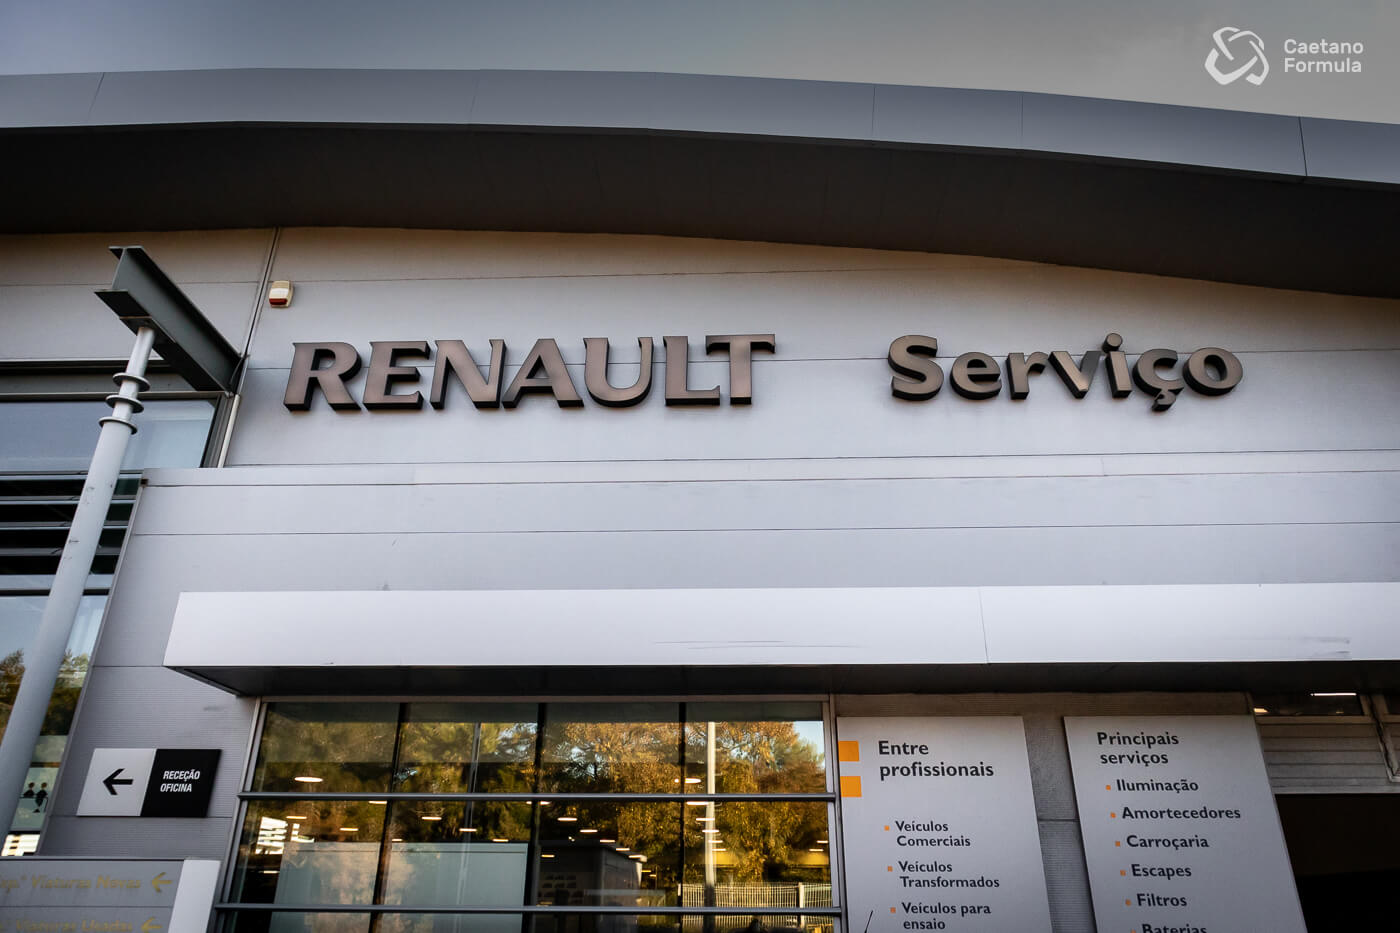 Serviços de Oficina Renault Caetano Formula